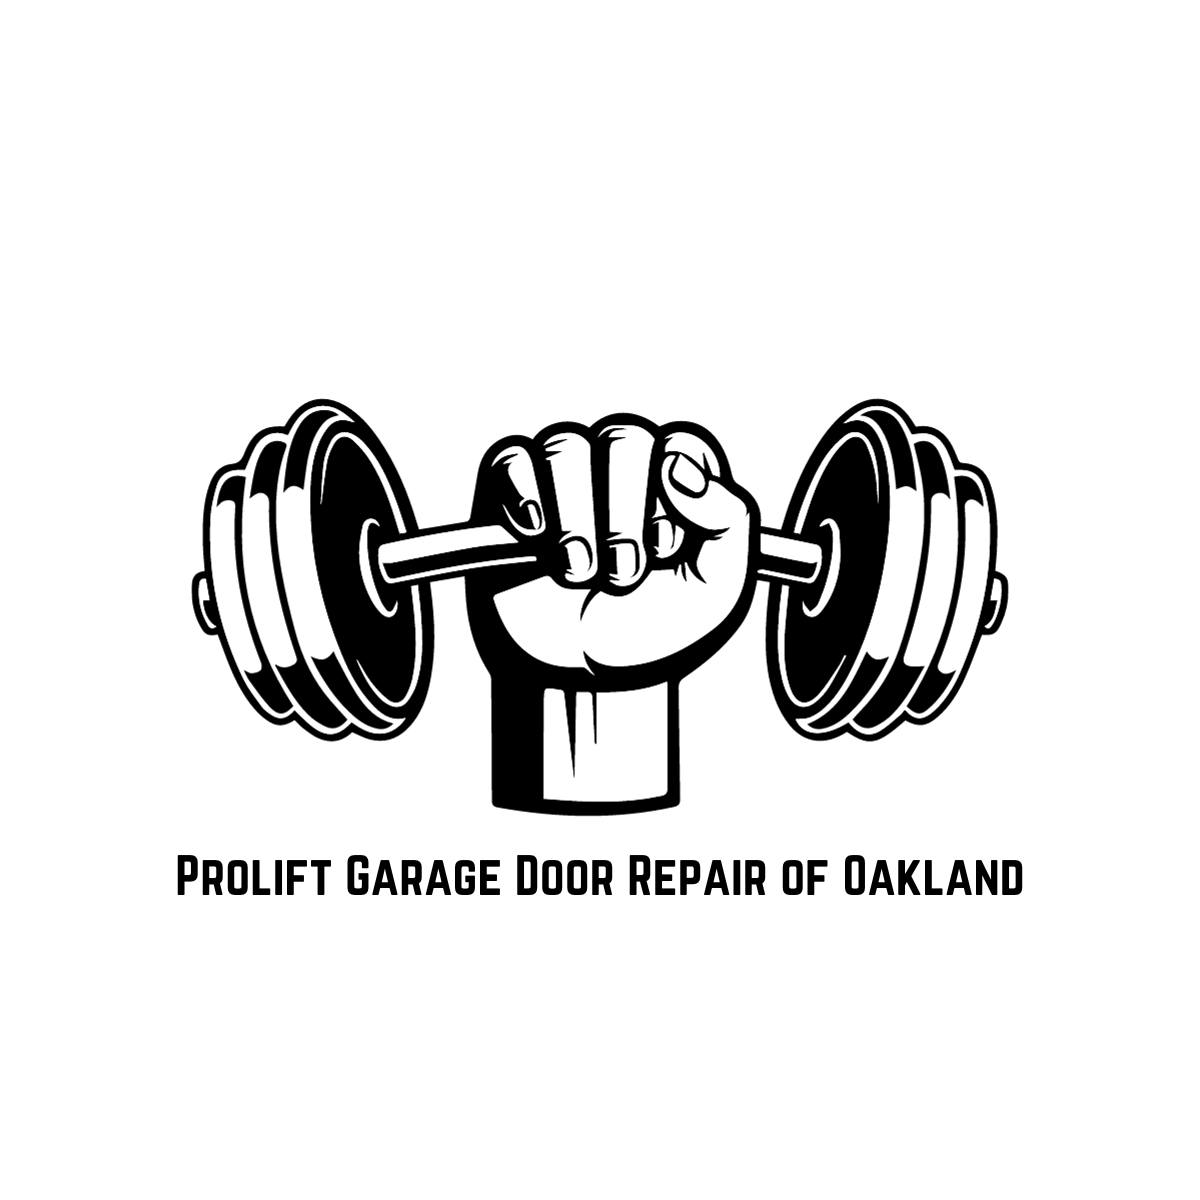 Prolift Garage Door Repair of Oakland